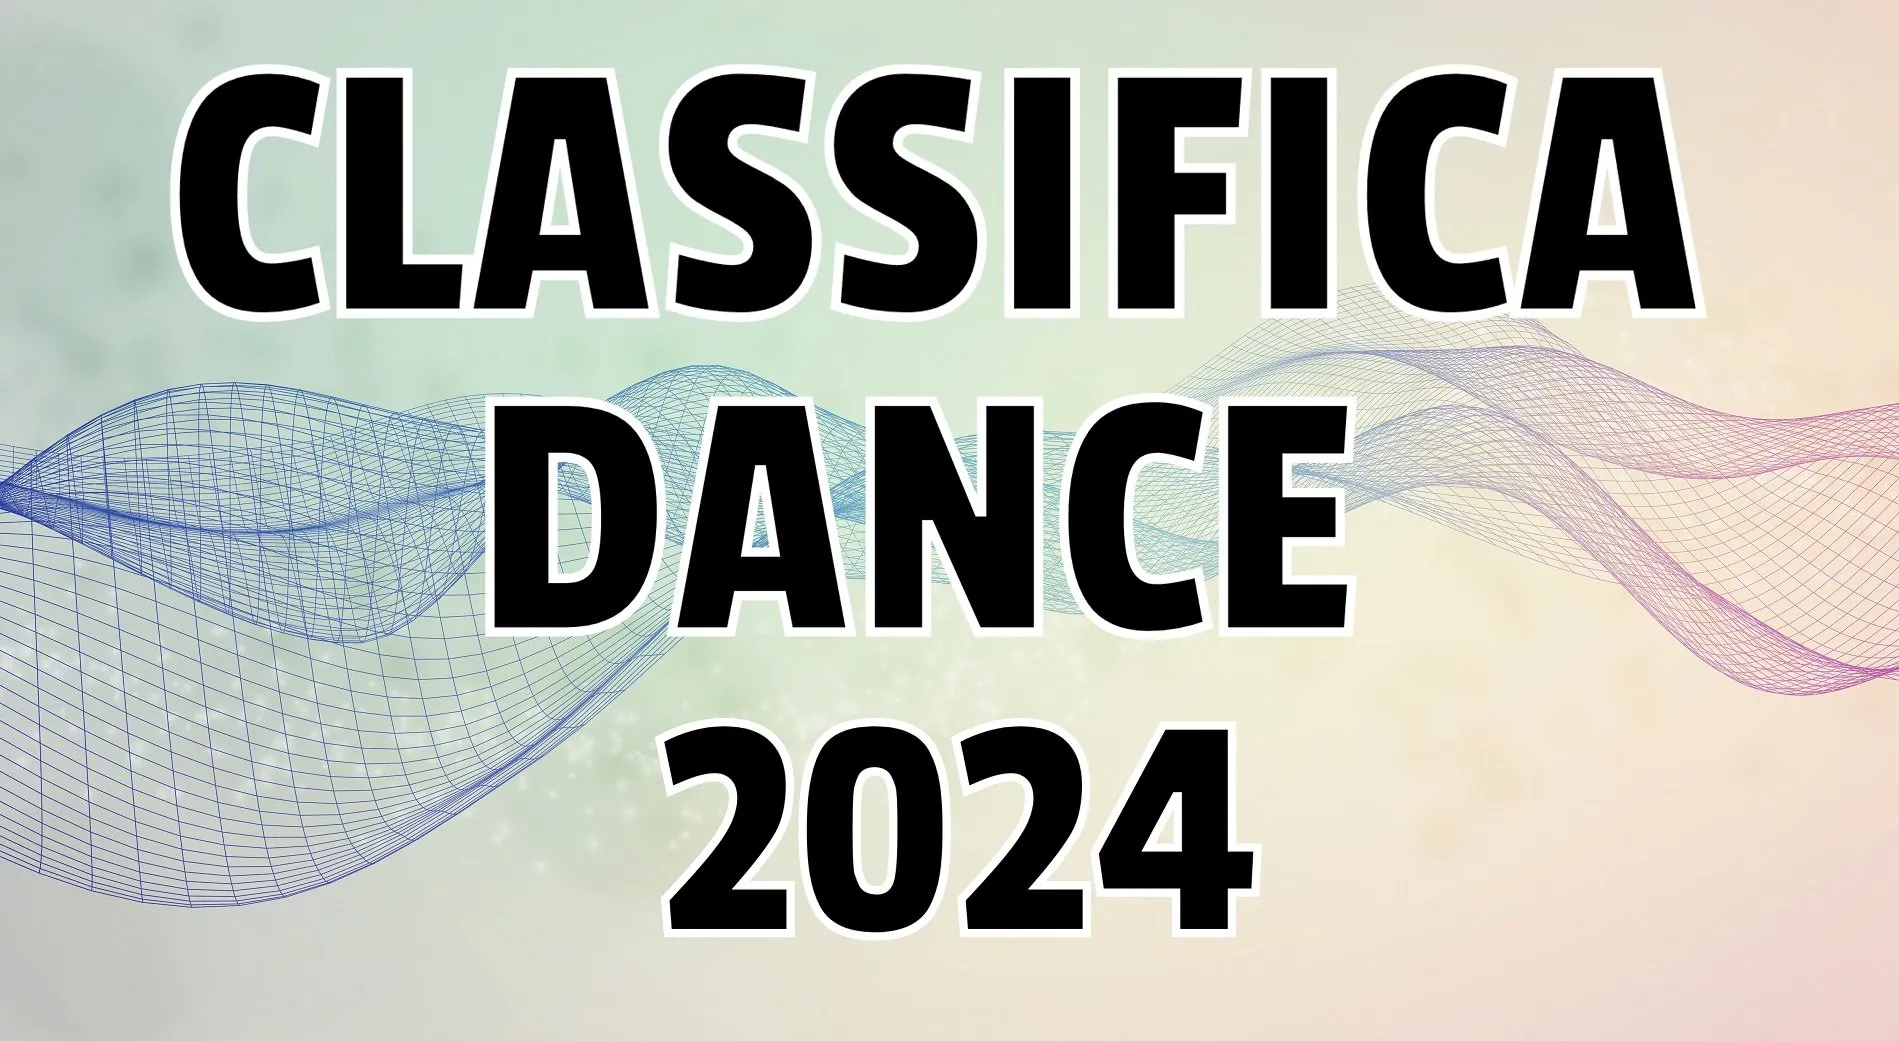 CLASSIFICA DANCE 2024